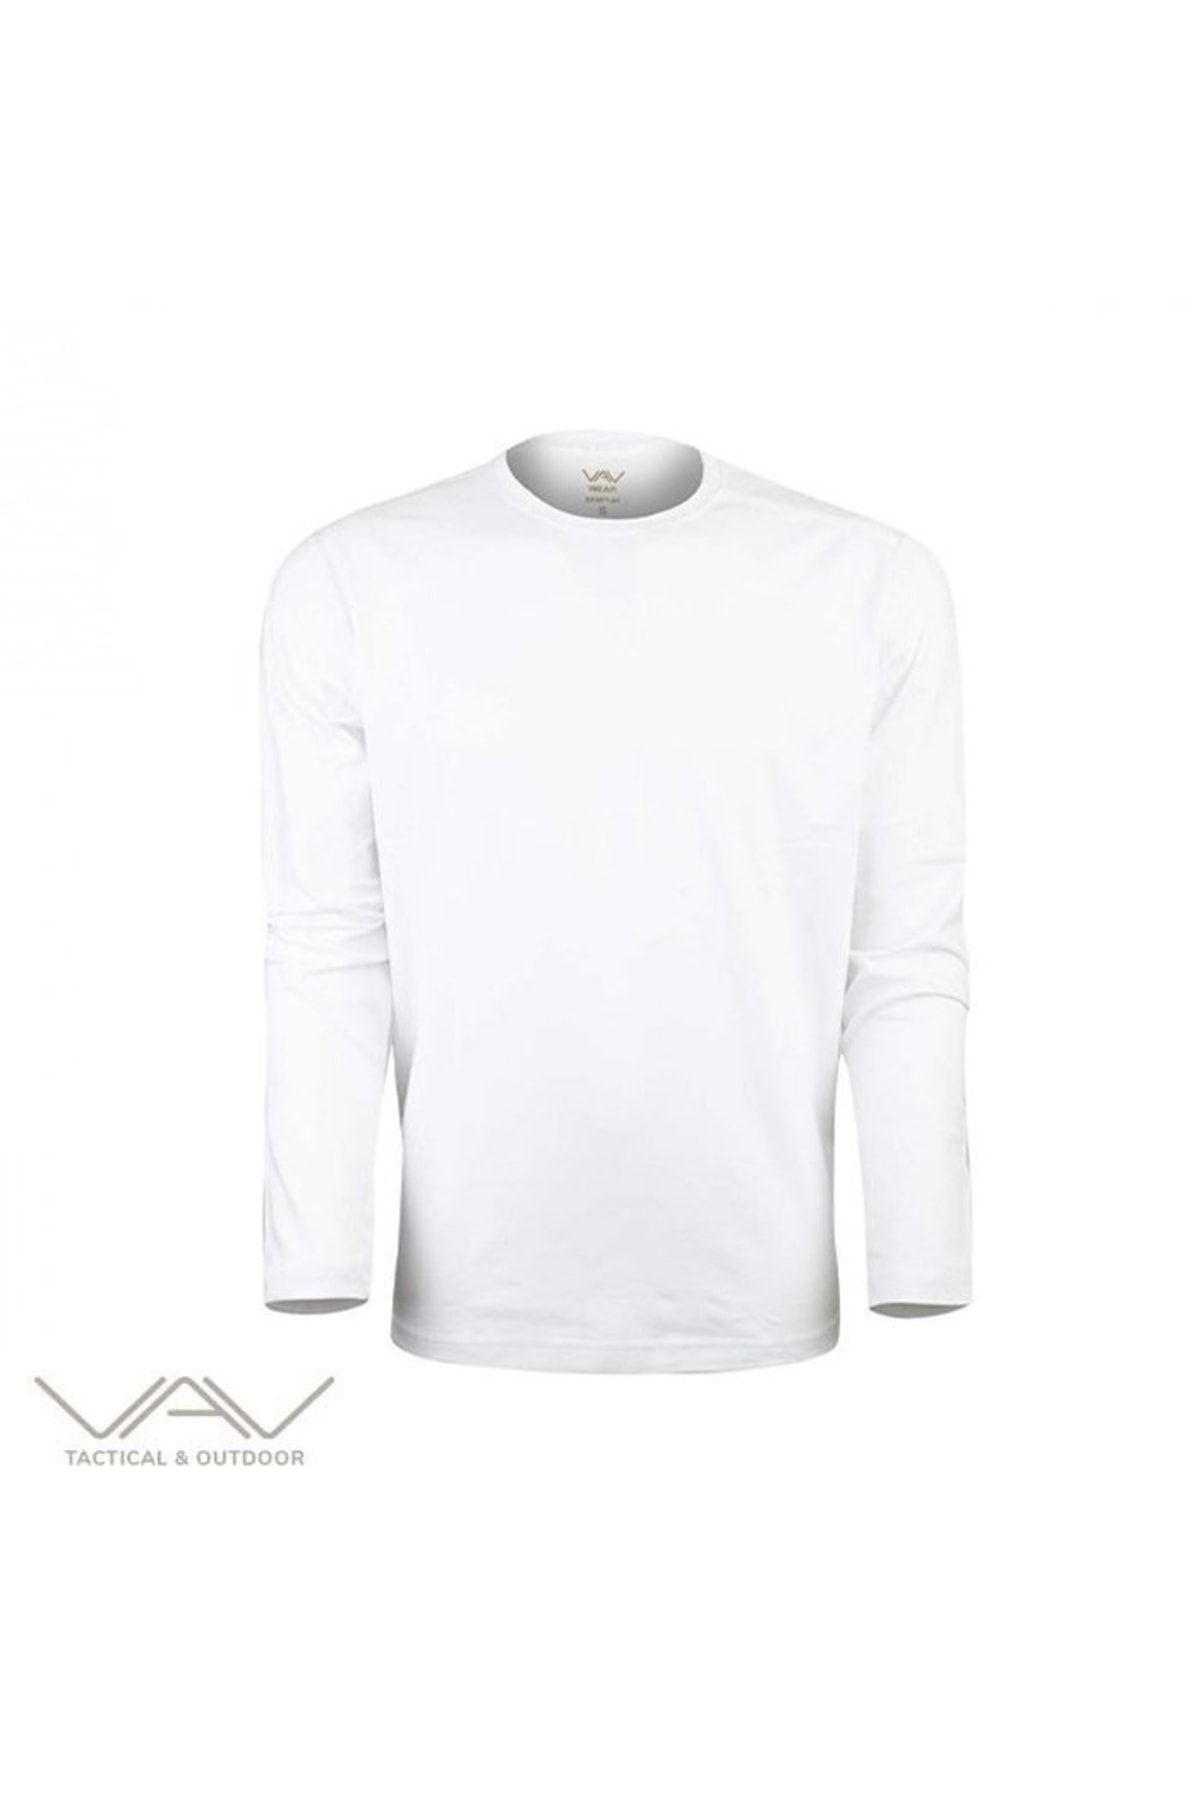 VAV WEAR Baseti-04 Uzun Kol Sweatshirt Beyaz Xl